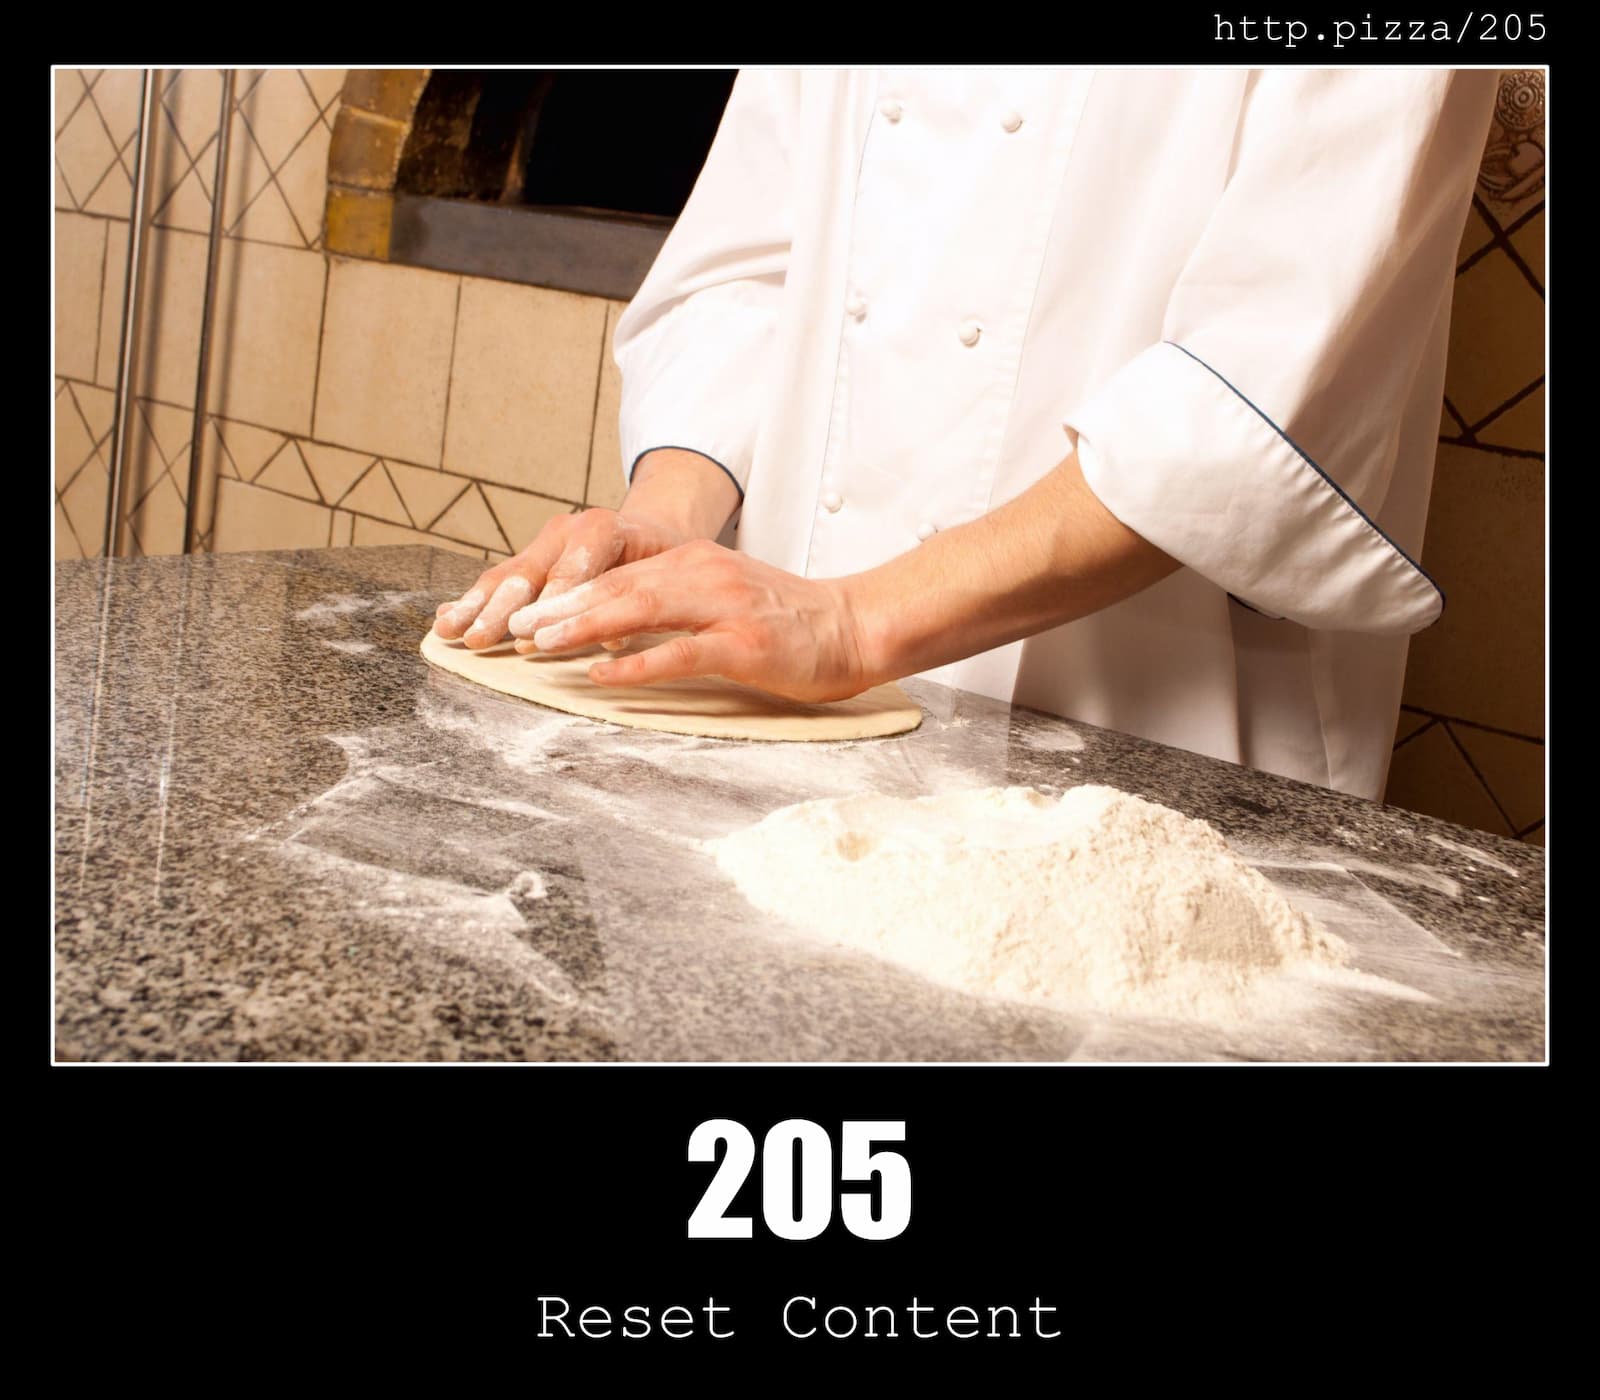 HTTP Status Code 205 Reset Content & Pizzas